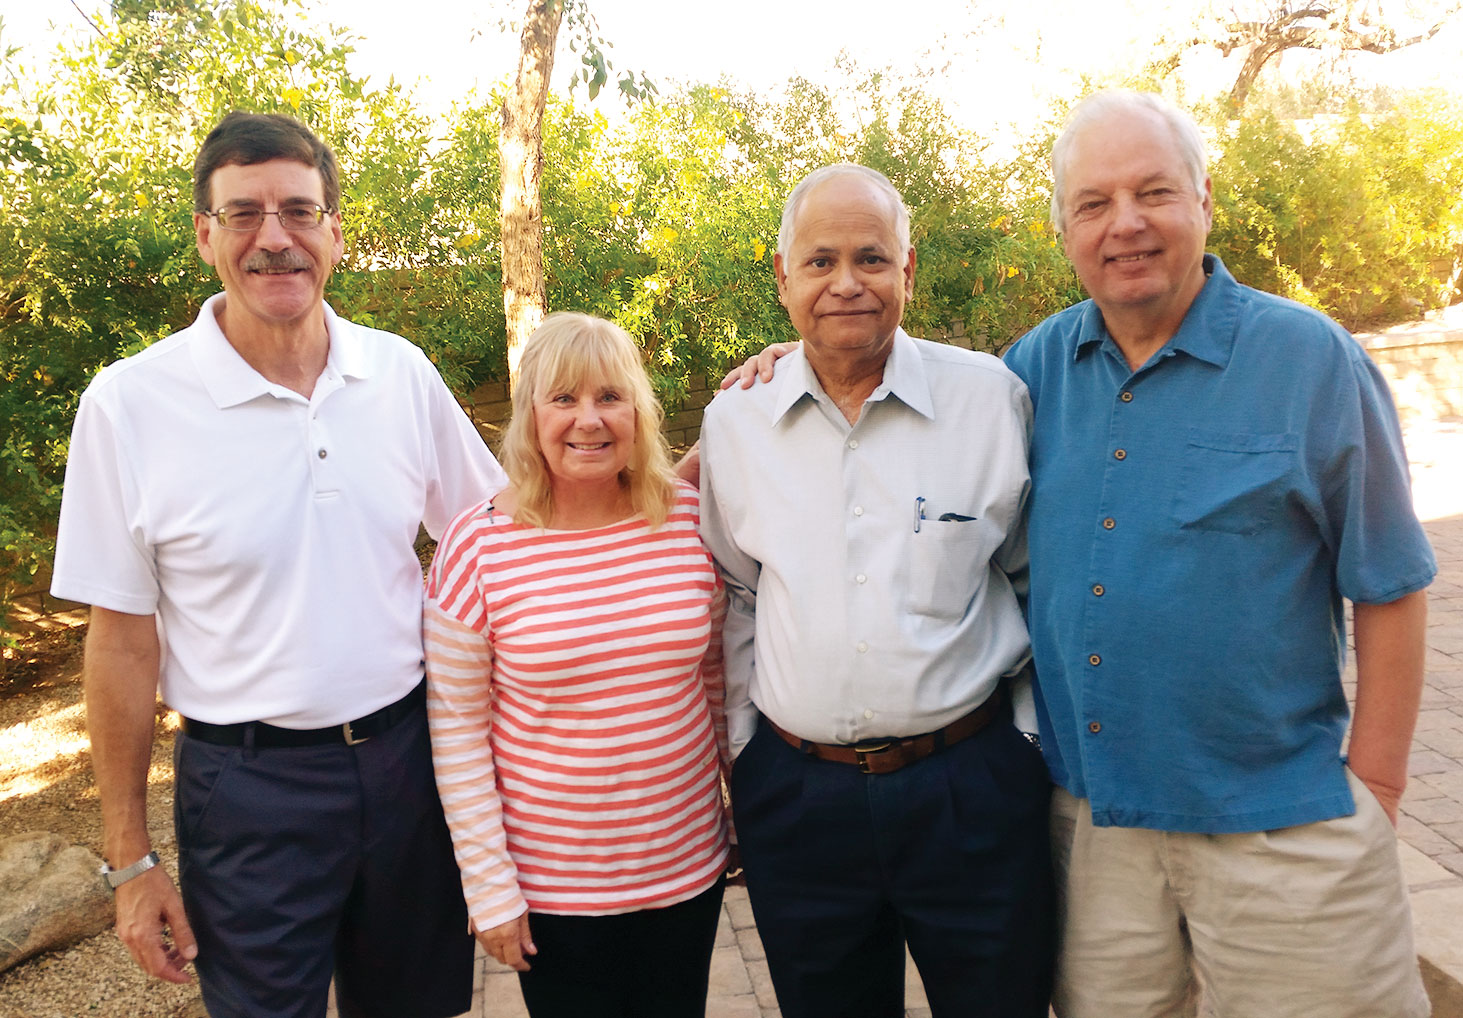 Left to right: Steve Sanderson, Kathy Bergman, Sudhakar Divakaruni and Dave Comfort